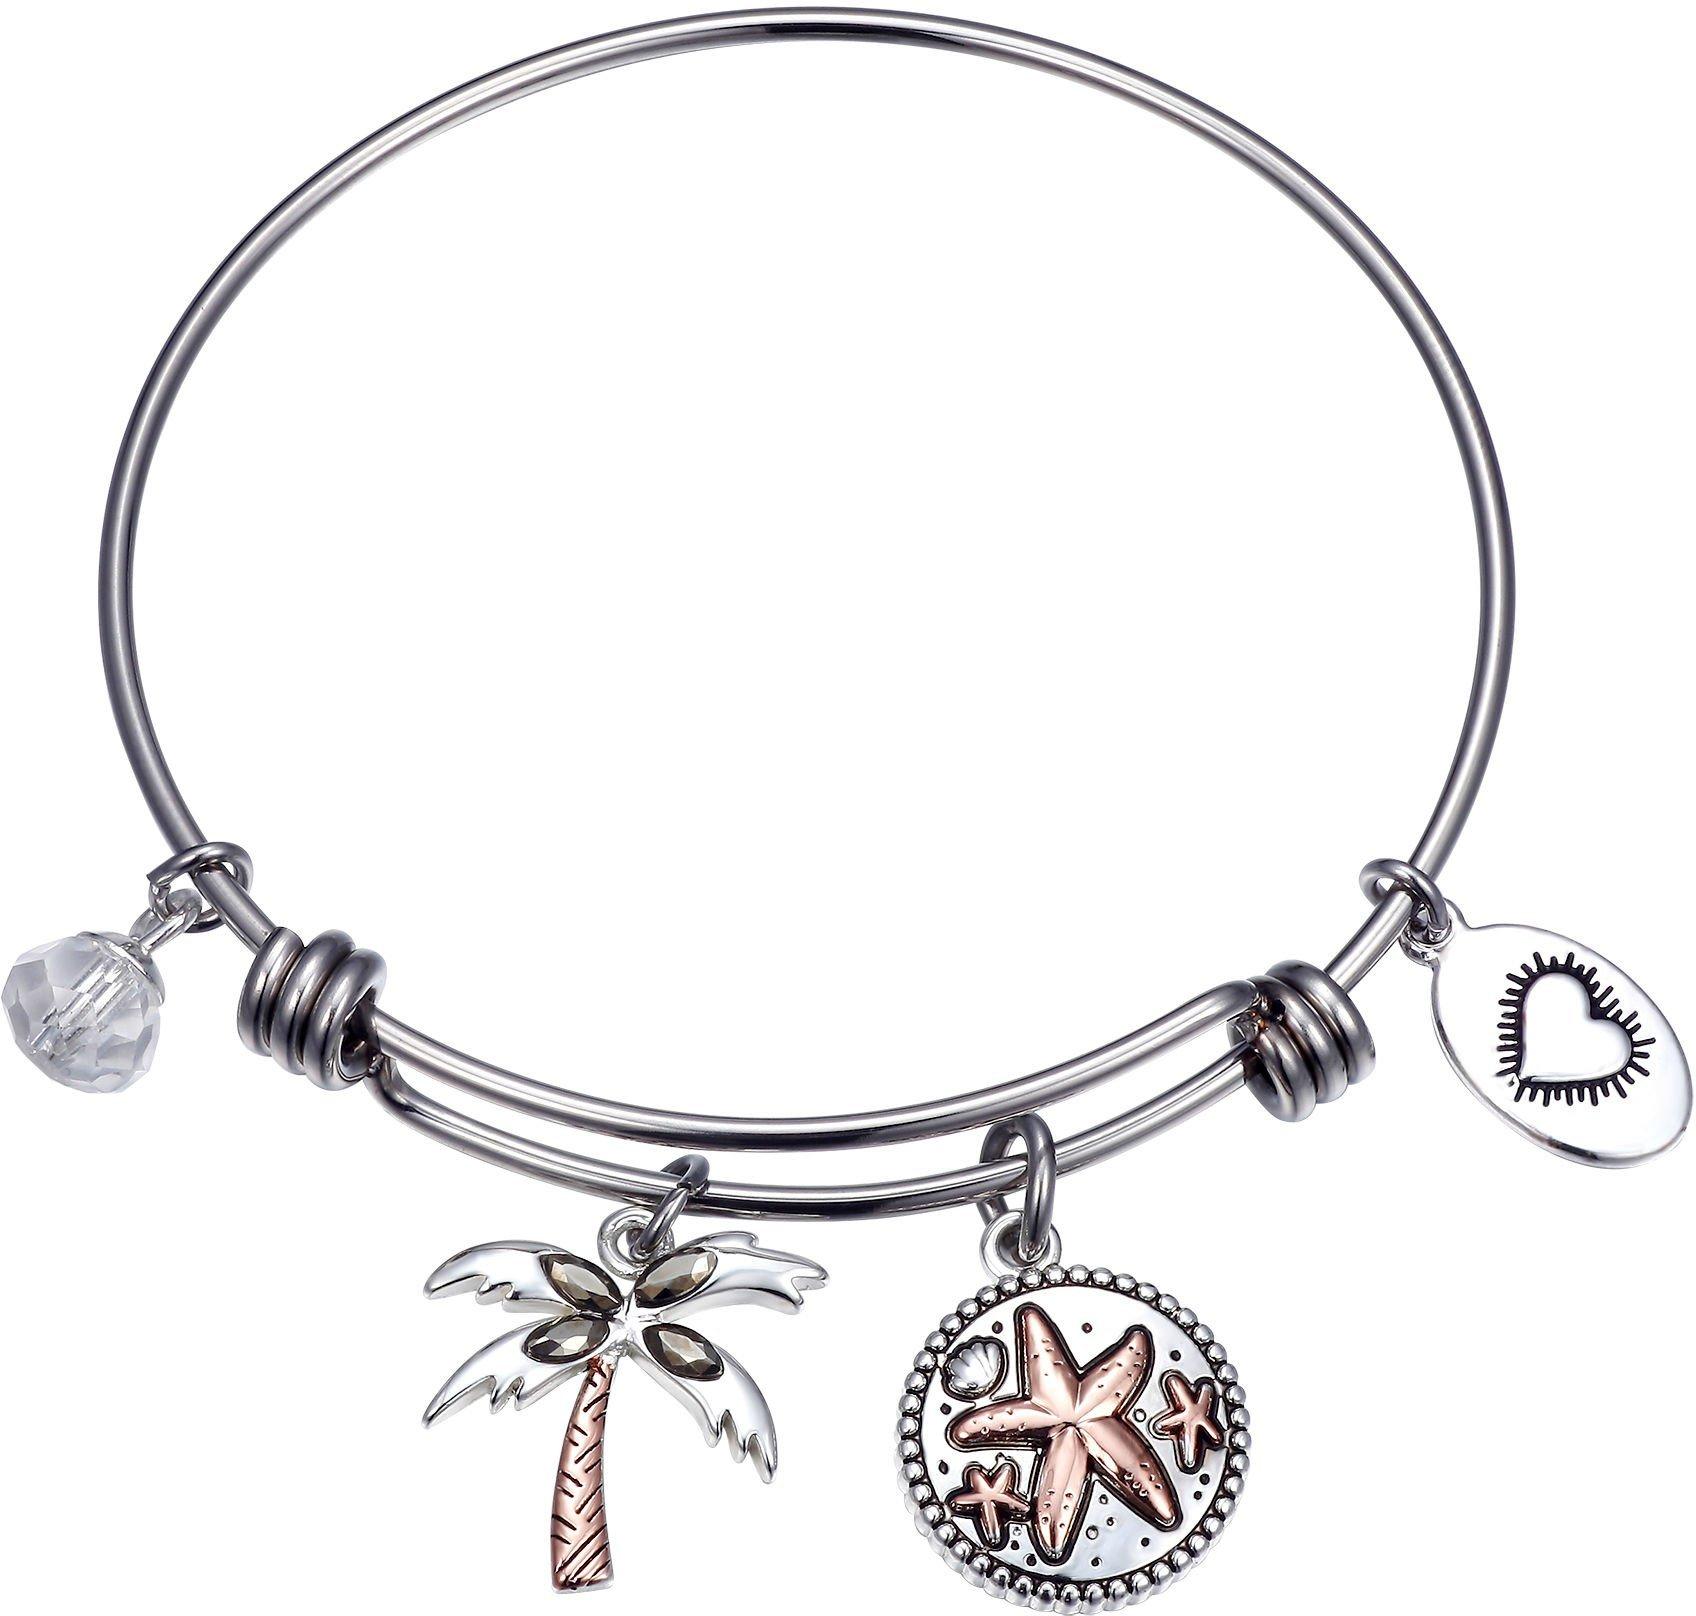 Life's A Beach & Palm Tree Charm Bangle Bracelet